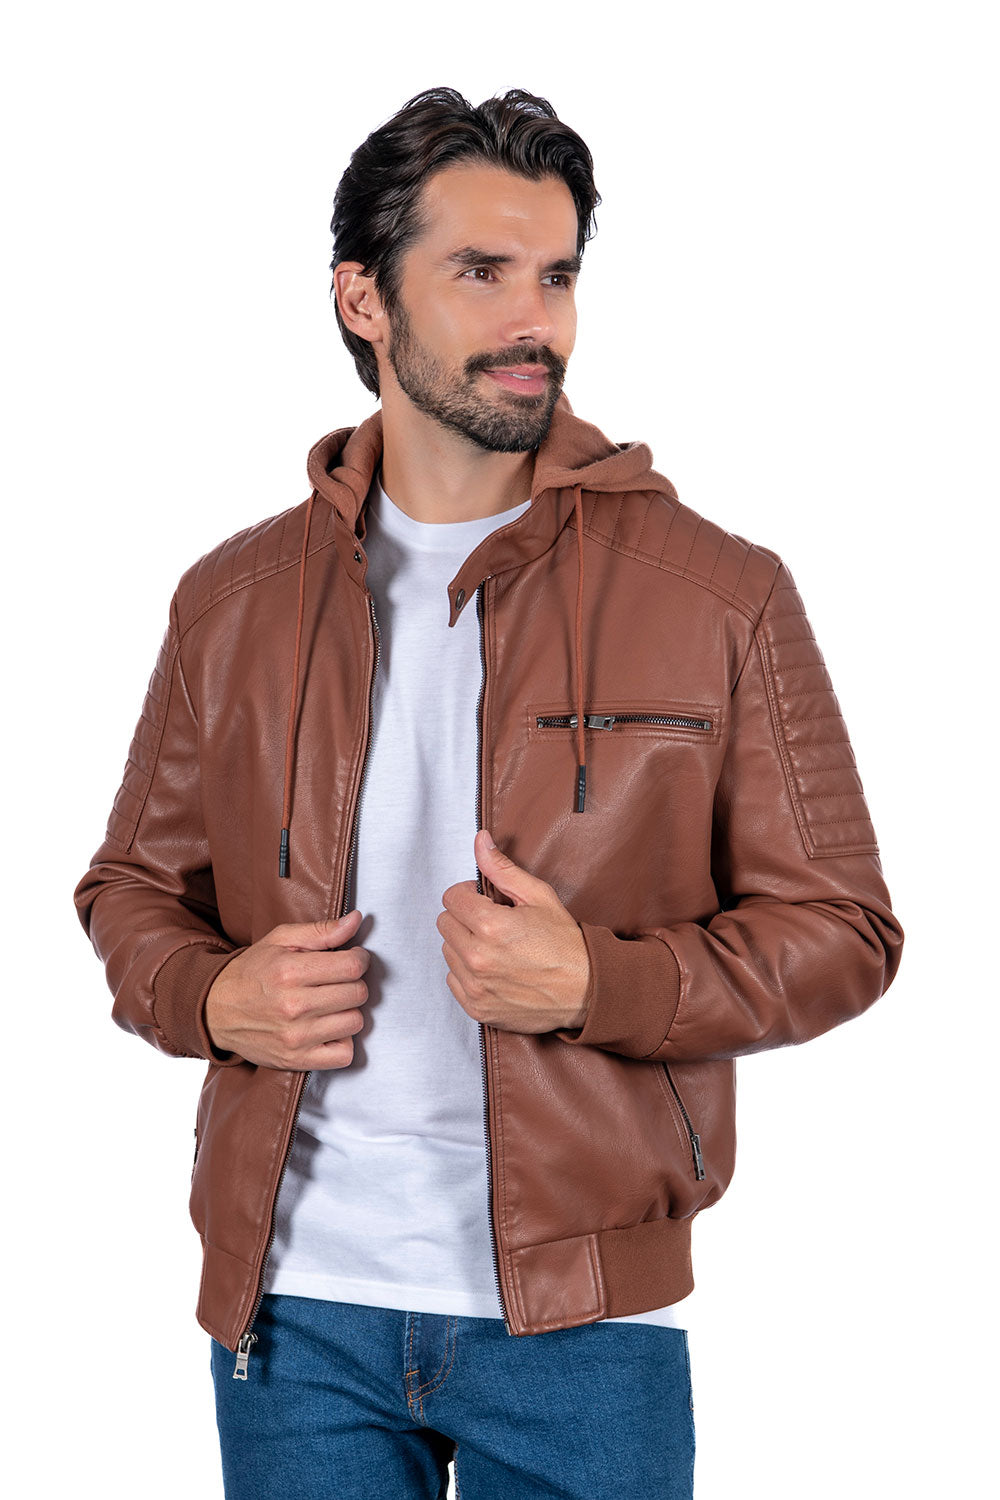 Men's PU Leather Jackets a Full Box of (S-M-L-XL-XXL / 4-6-7-4-3) 24pcs